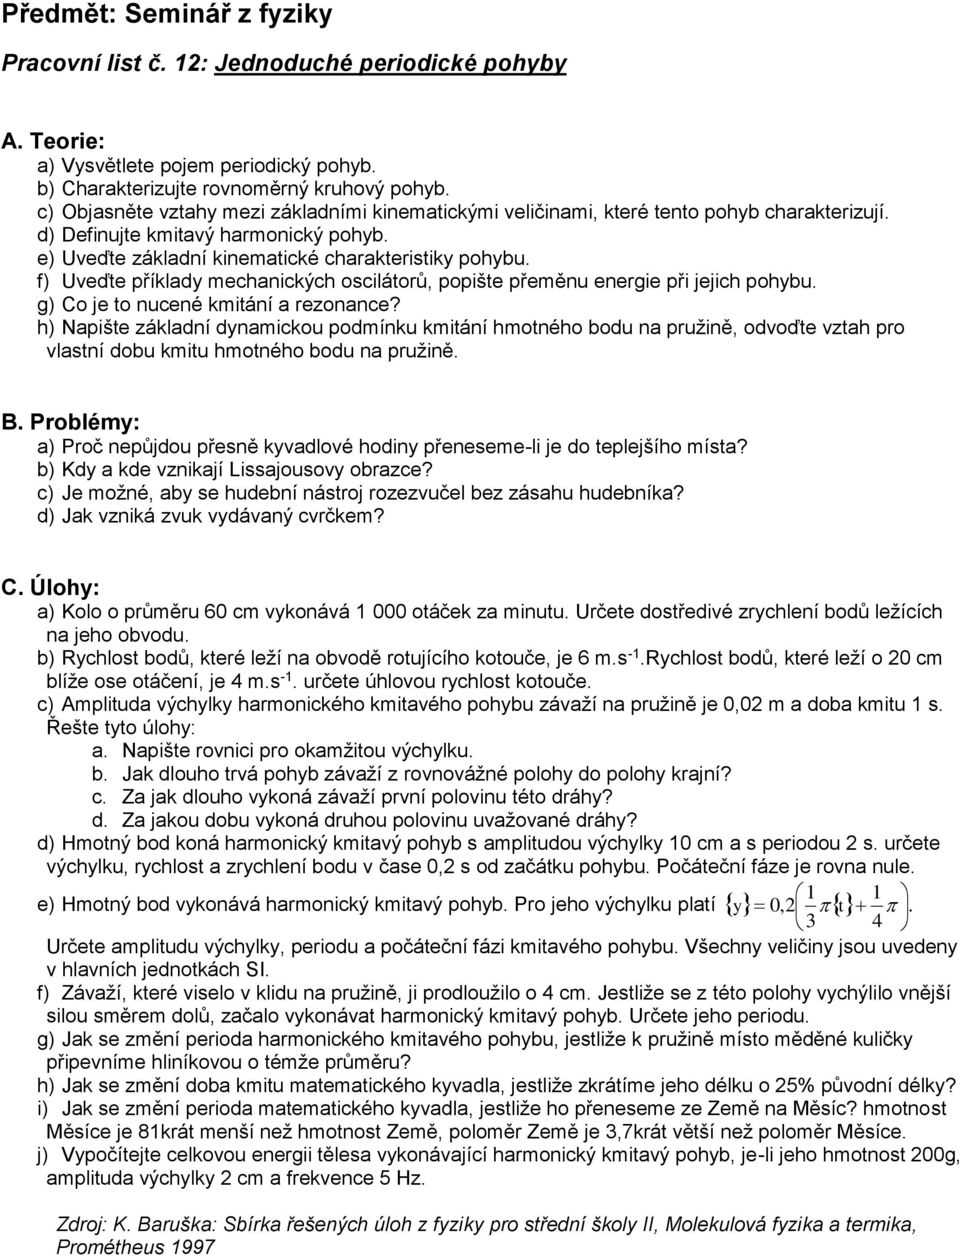 Předmět: Seminář z fyziky - PDF Stažení zdarma